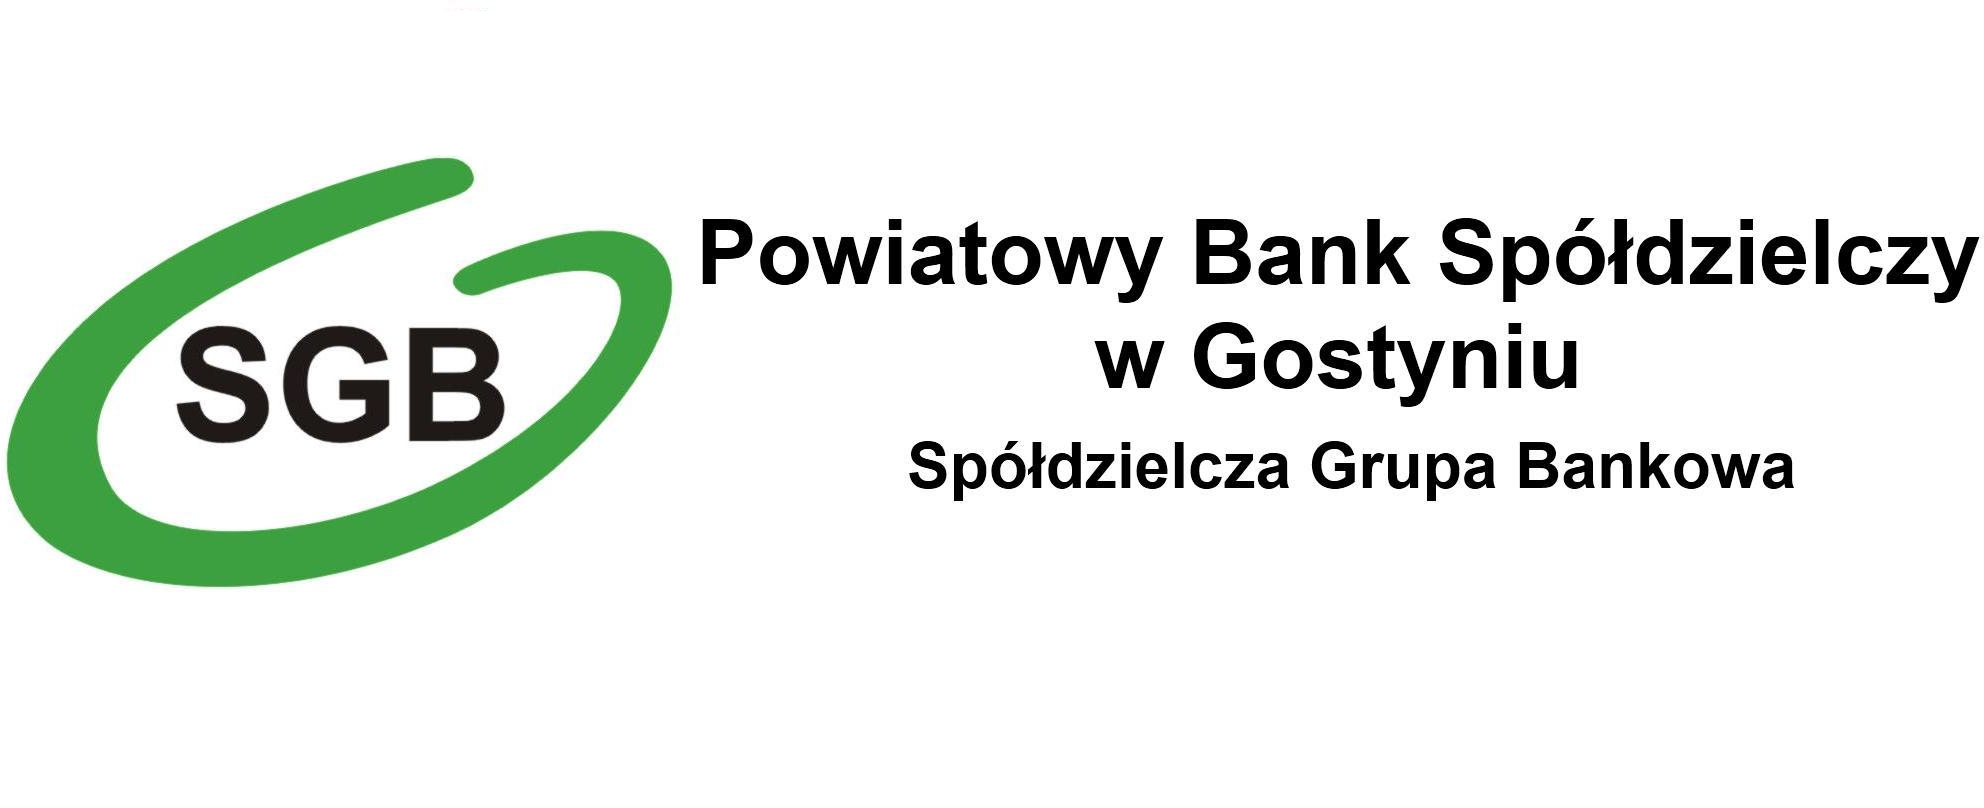 Noworoczne marzenia - Powiatowy Bank Spółdzielczy w Gostyniu